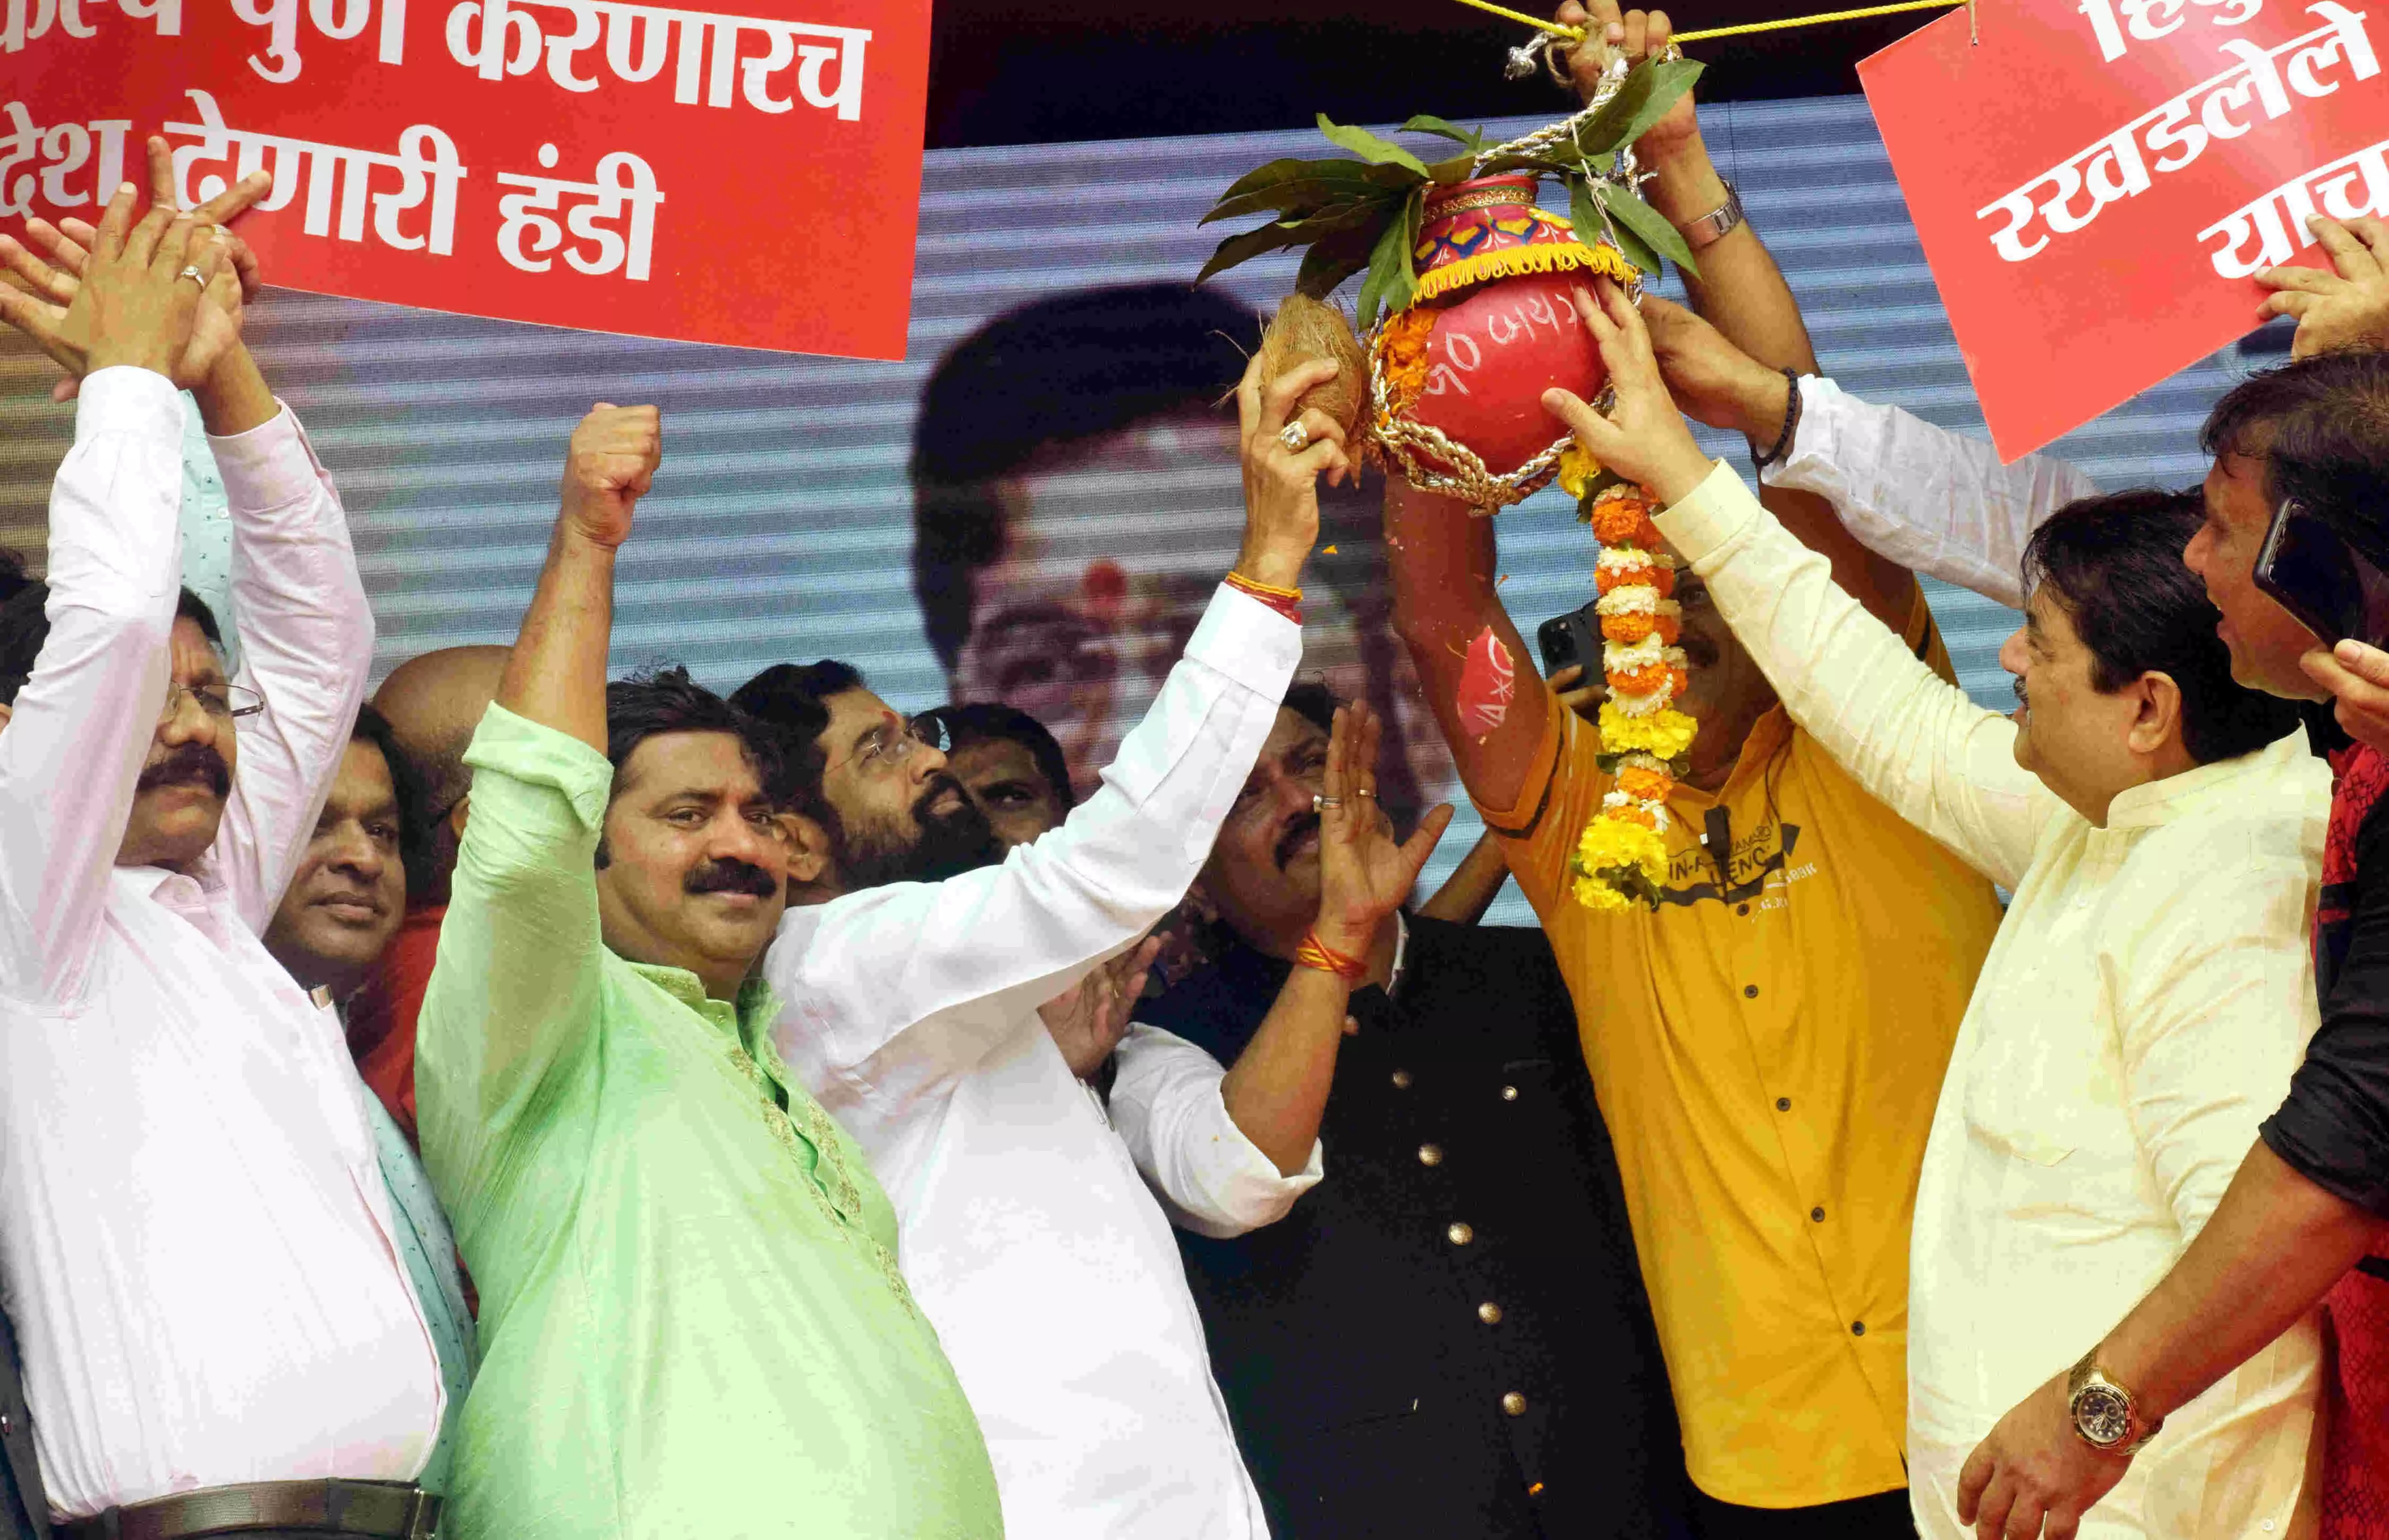 दही हंडी उत्सव में शिंदे गुट ने दिखाई राजनीतिक ताकत, उद्धव गुट पर साधा निशाना